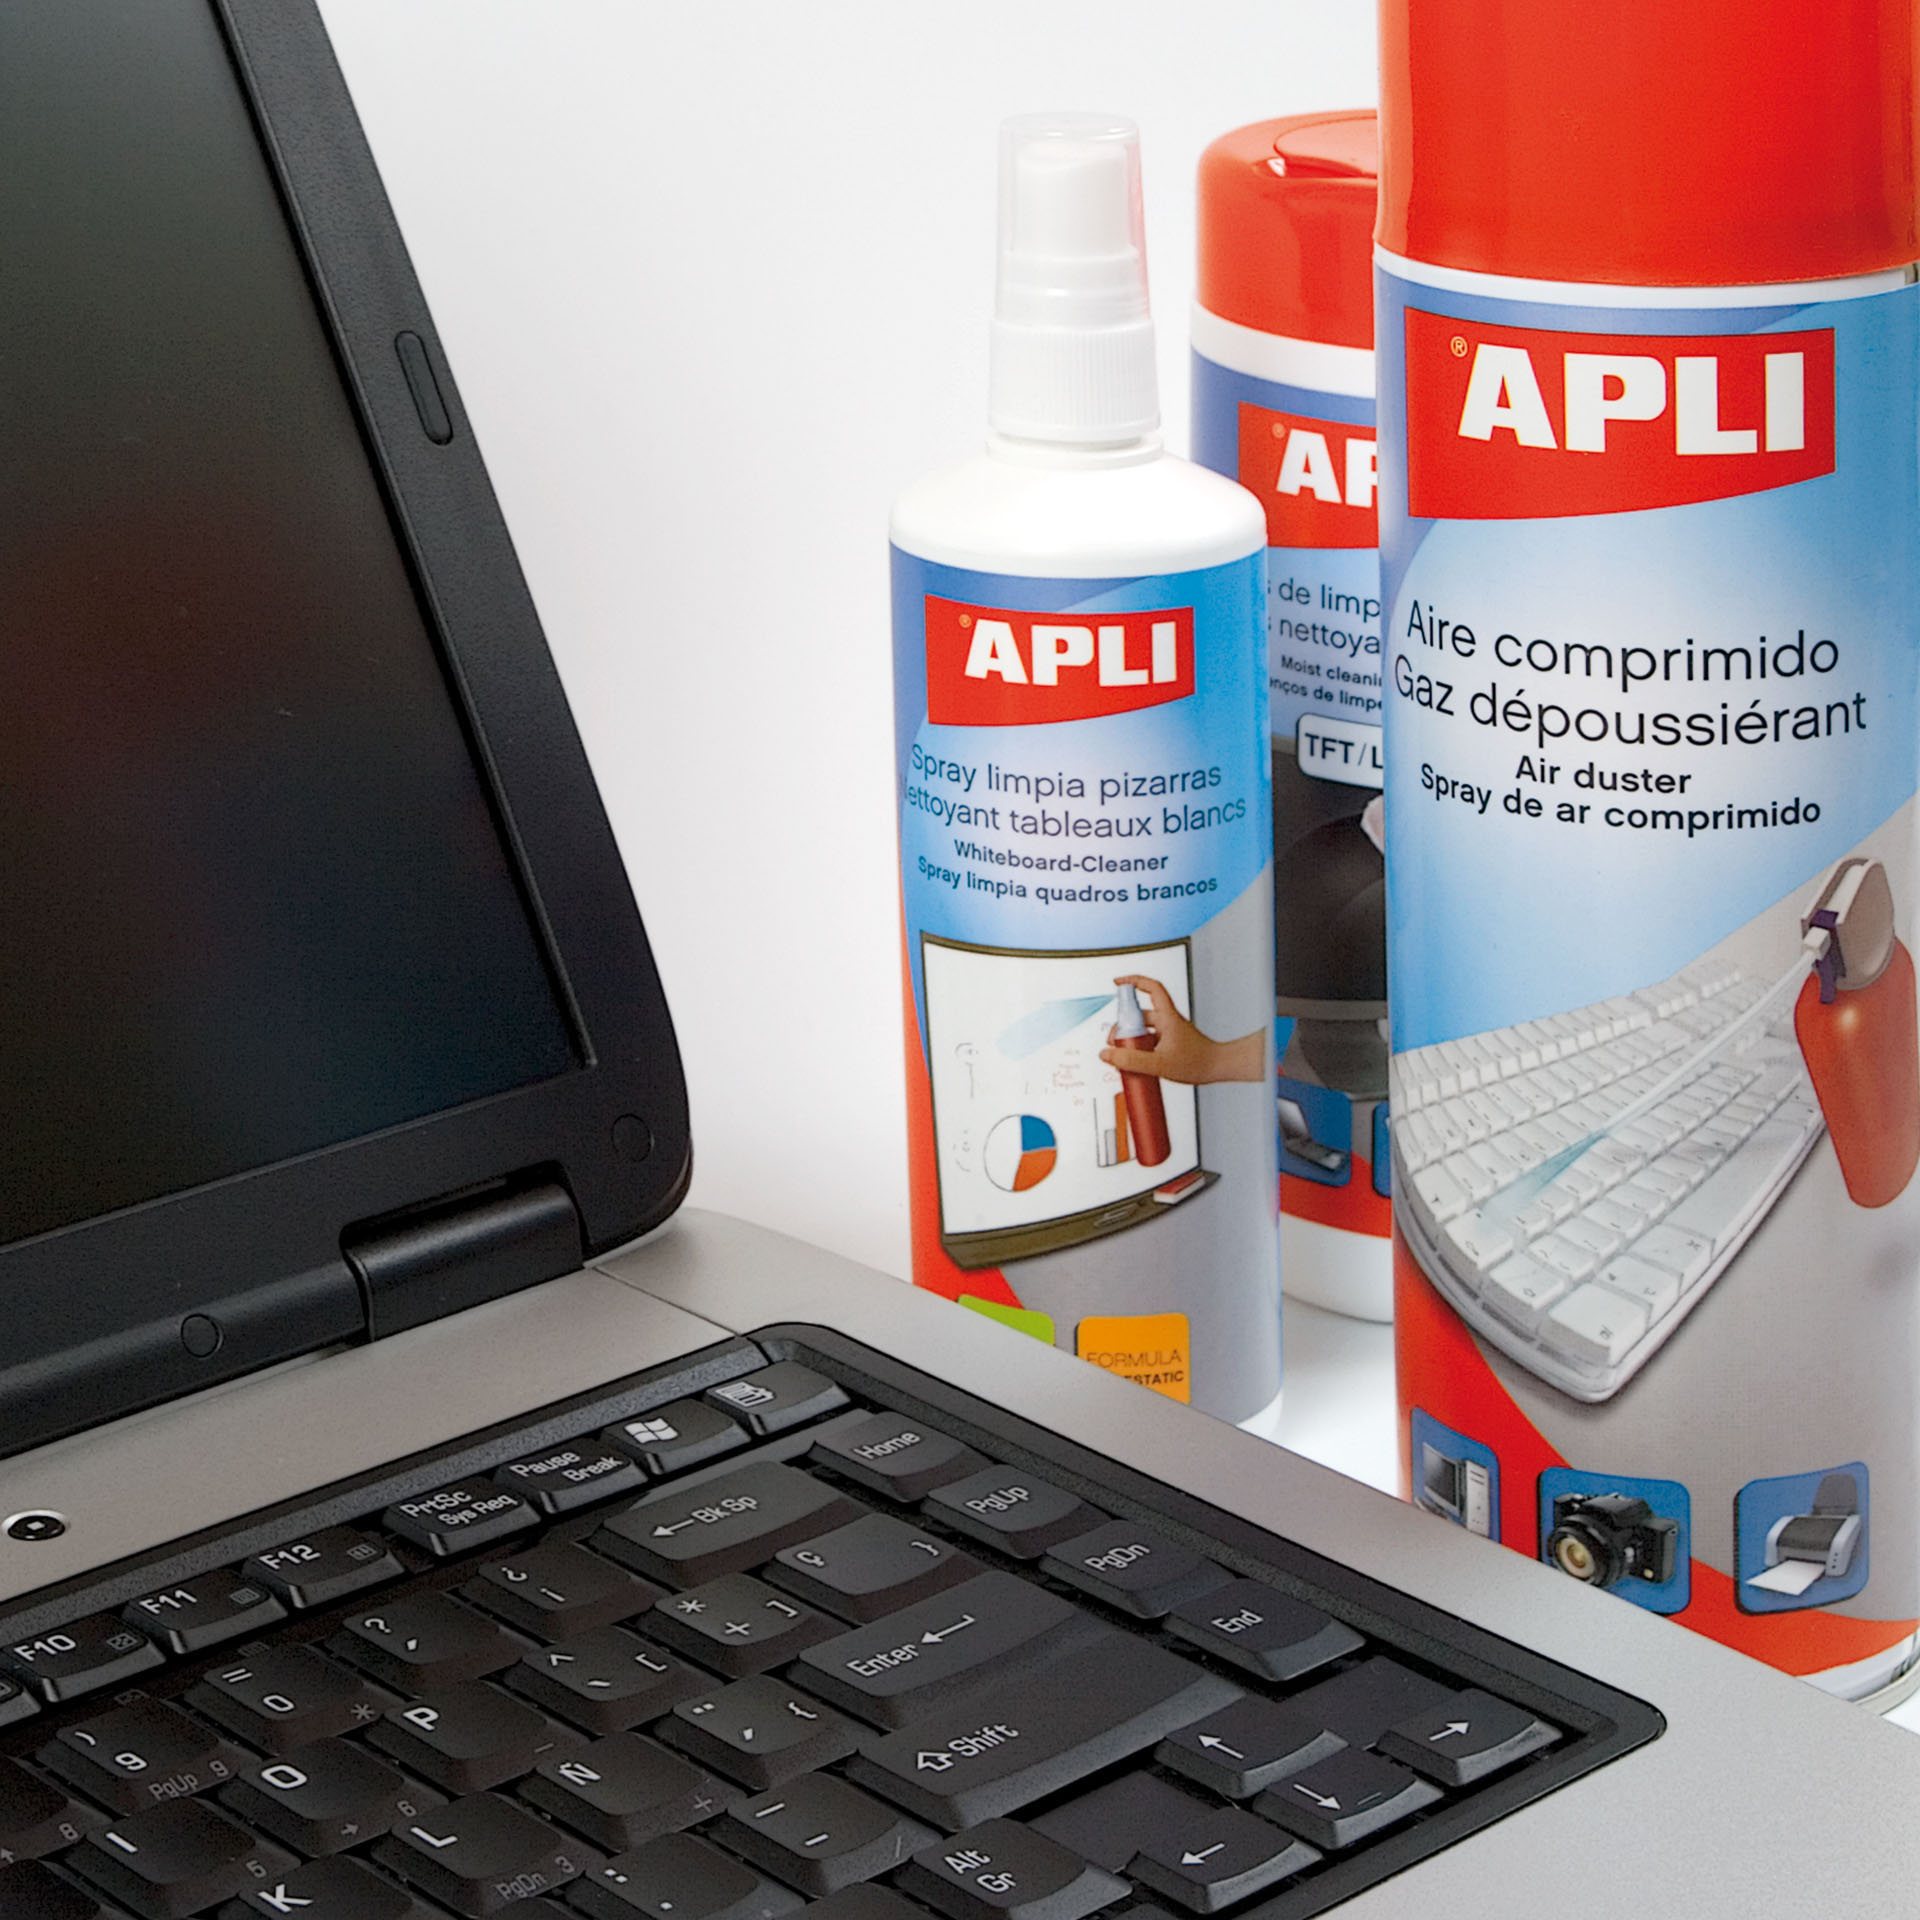 Spray nettoyant pour écran Apli TFT/LCD - Contenu 250 ml - Élimine les taches et la poussière - Maintient les écrans propres et sans bactéries